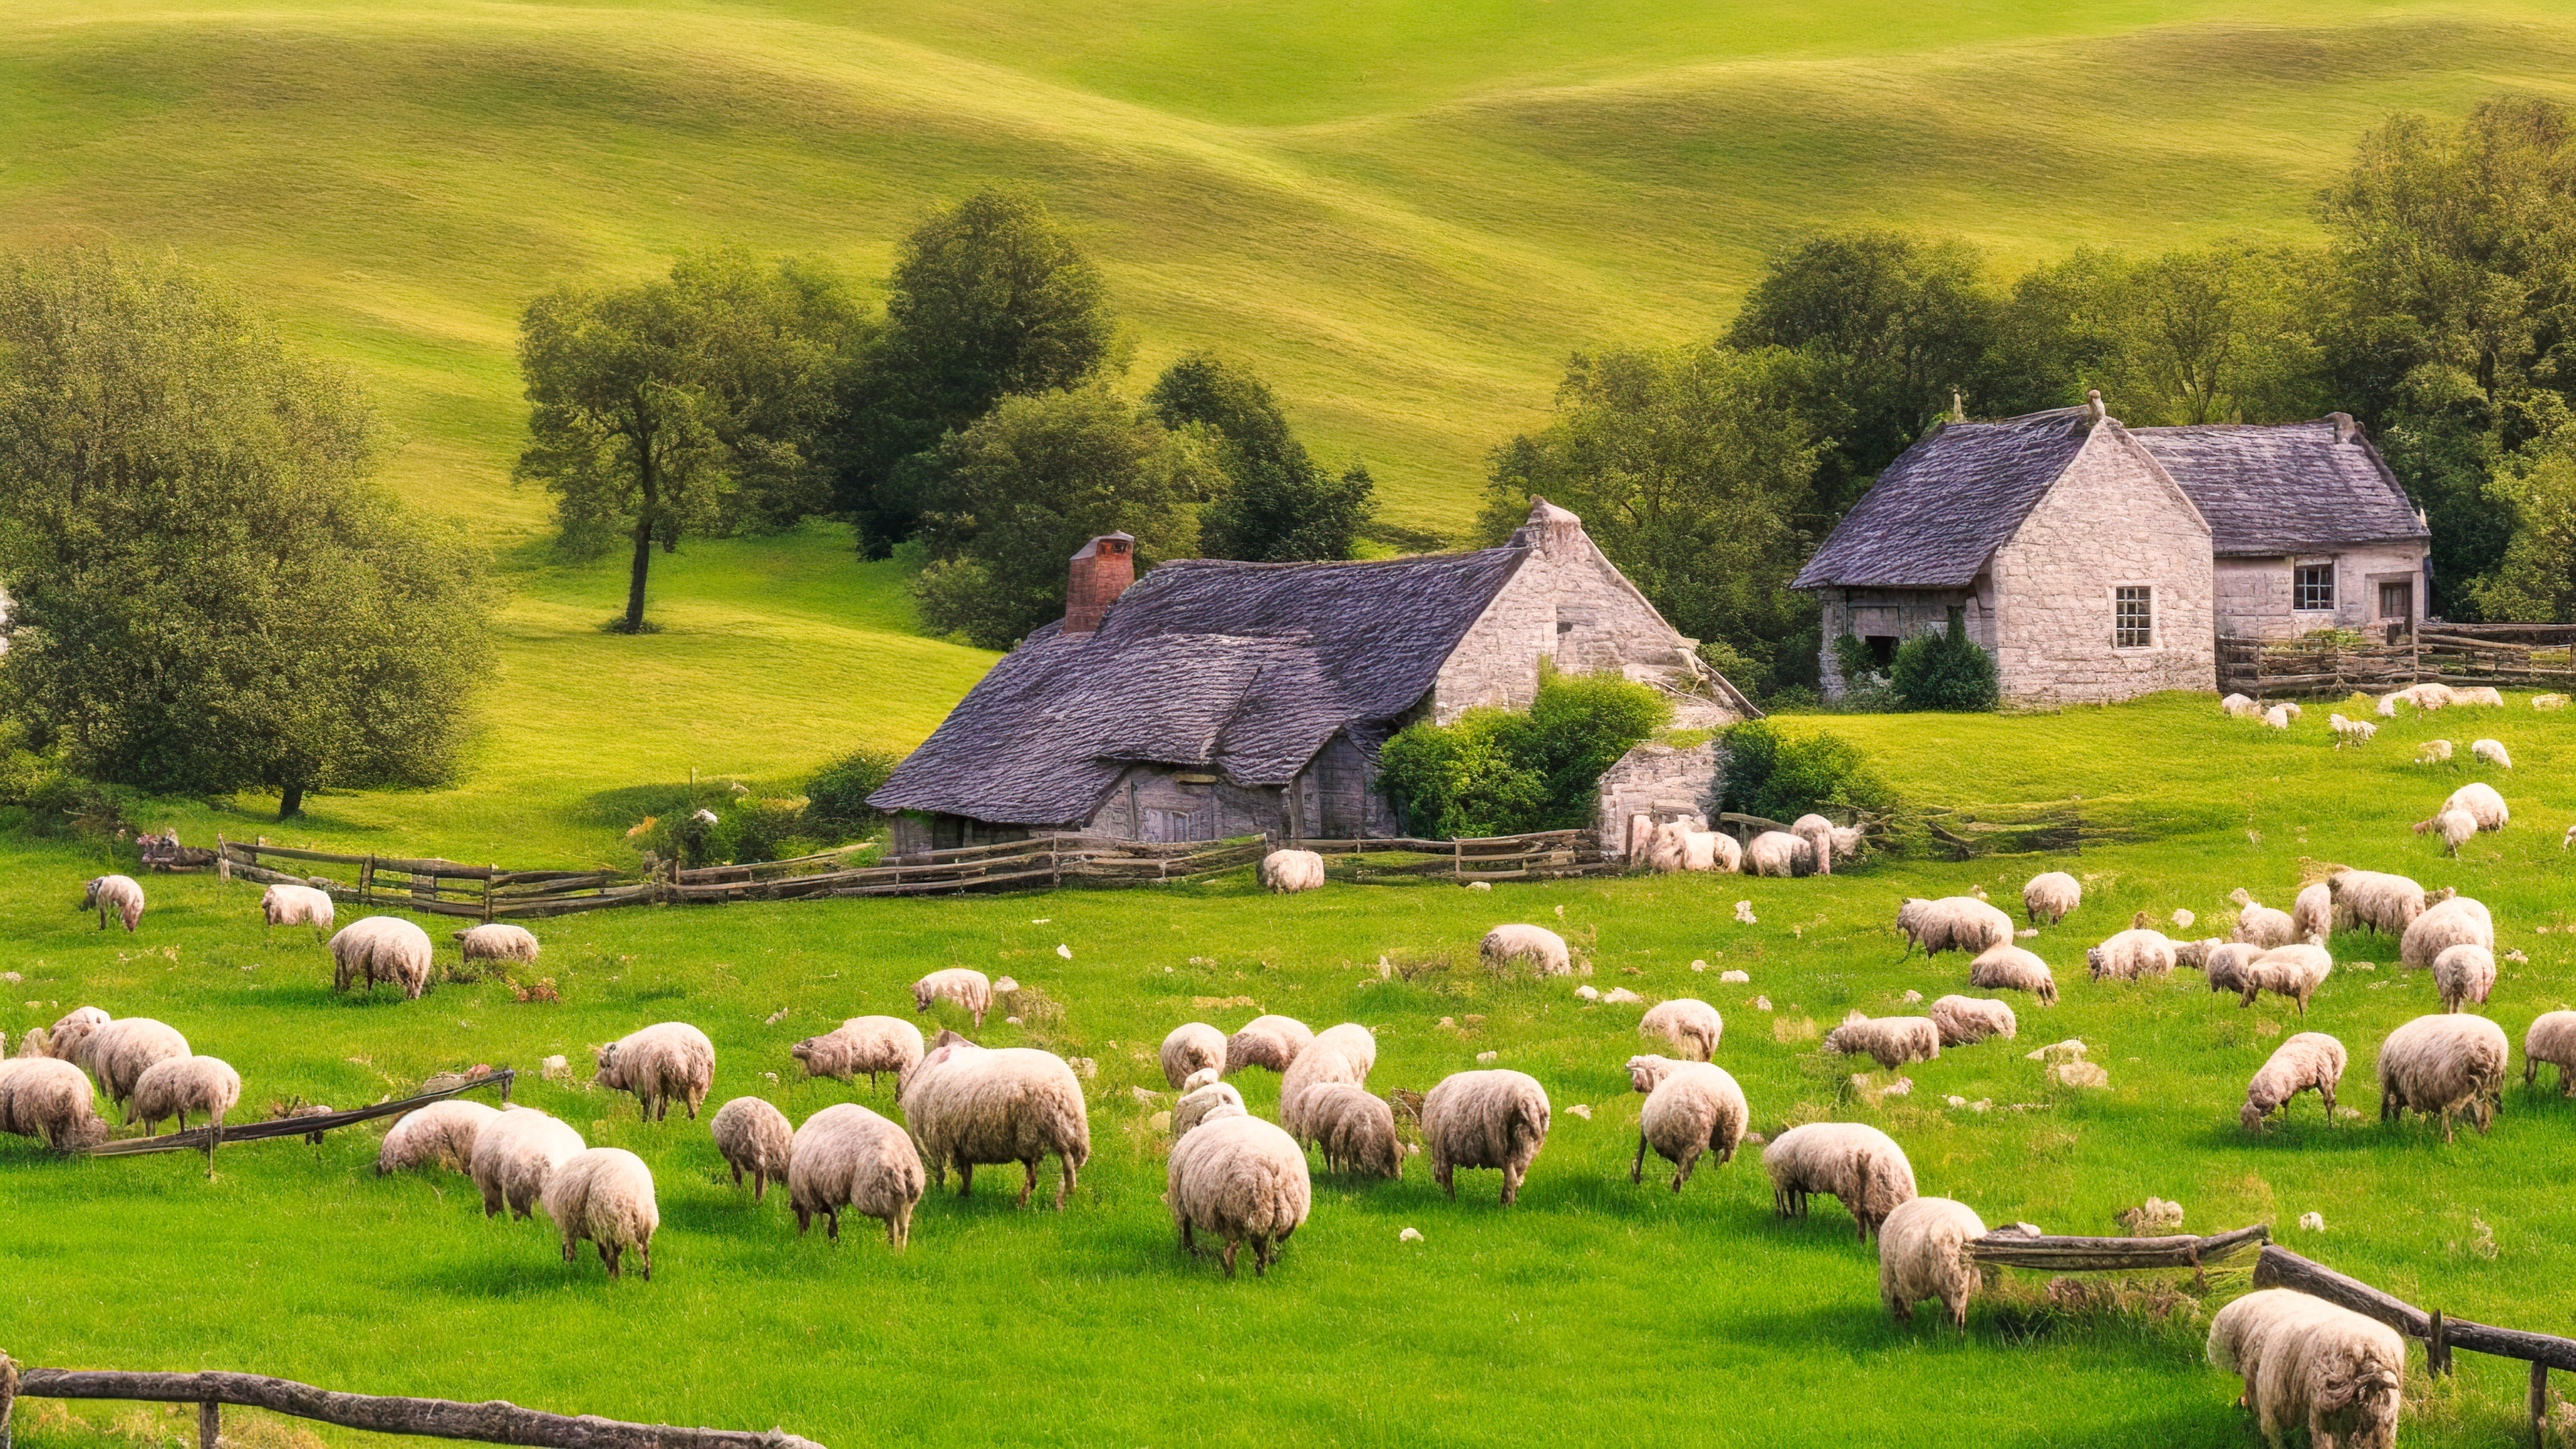 Entrez dans la tranquillité d'un paisible cottage de campagne niché parmi les collines vallonnées, entouré de moutons qui paissent, avec notre fond d'écran de paysage en 4K pour votre ordinateur portable.